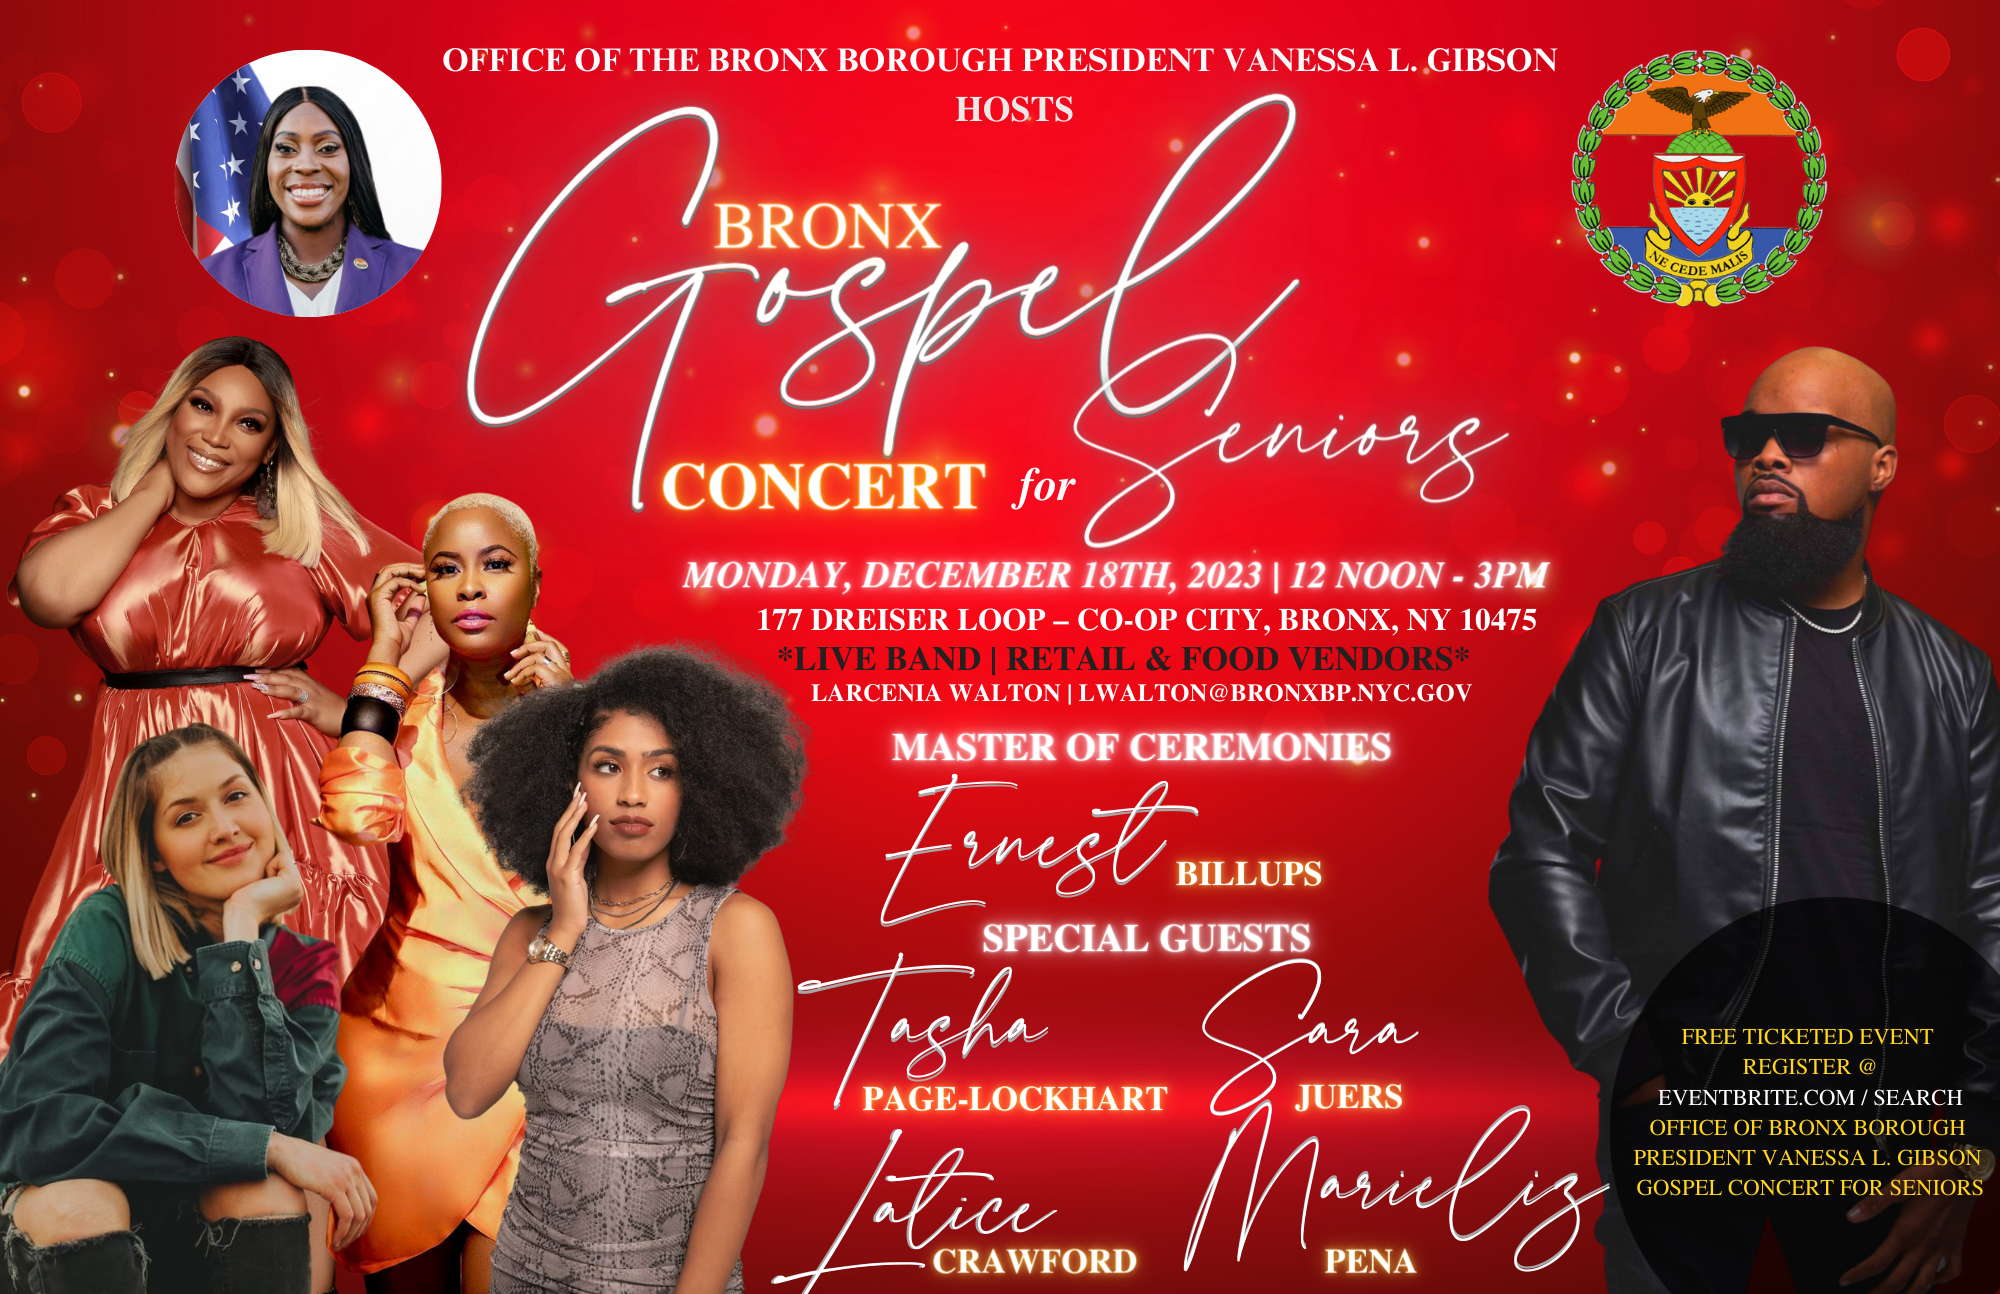 A flyer for the Bronx Gospel Concert for Seniors on December 18, 2023.